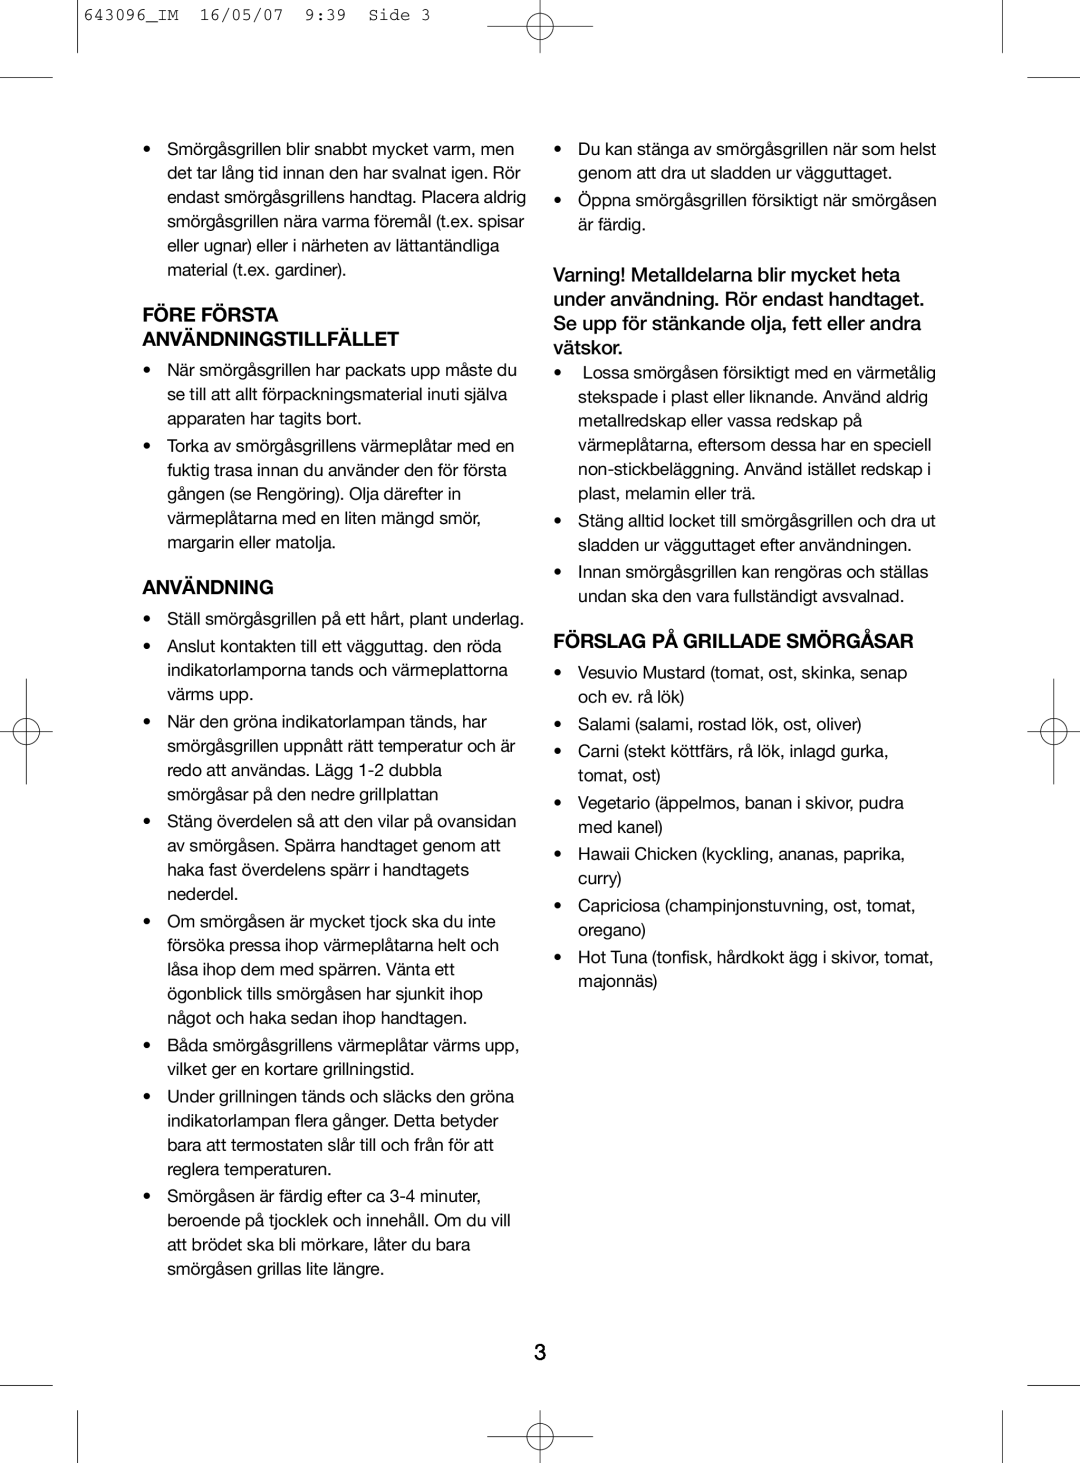 Melissa 143-074 manual Före Första Användningstillfället, Förslag På Grillade Smörgåsar 